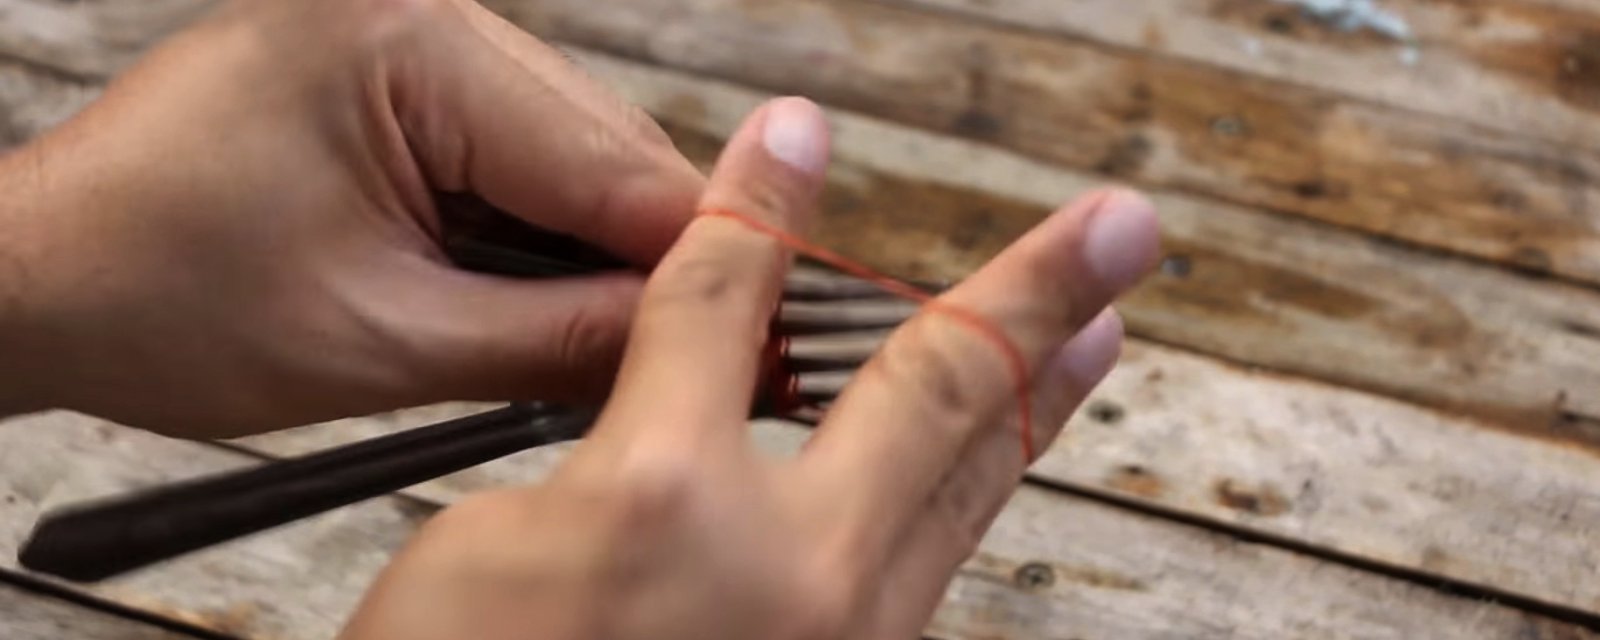 Elle n'a pas de pinces sous la main, elle décide de mettre un élastique autour de 2 fourchettes